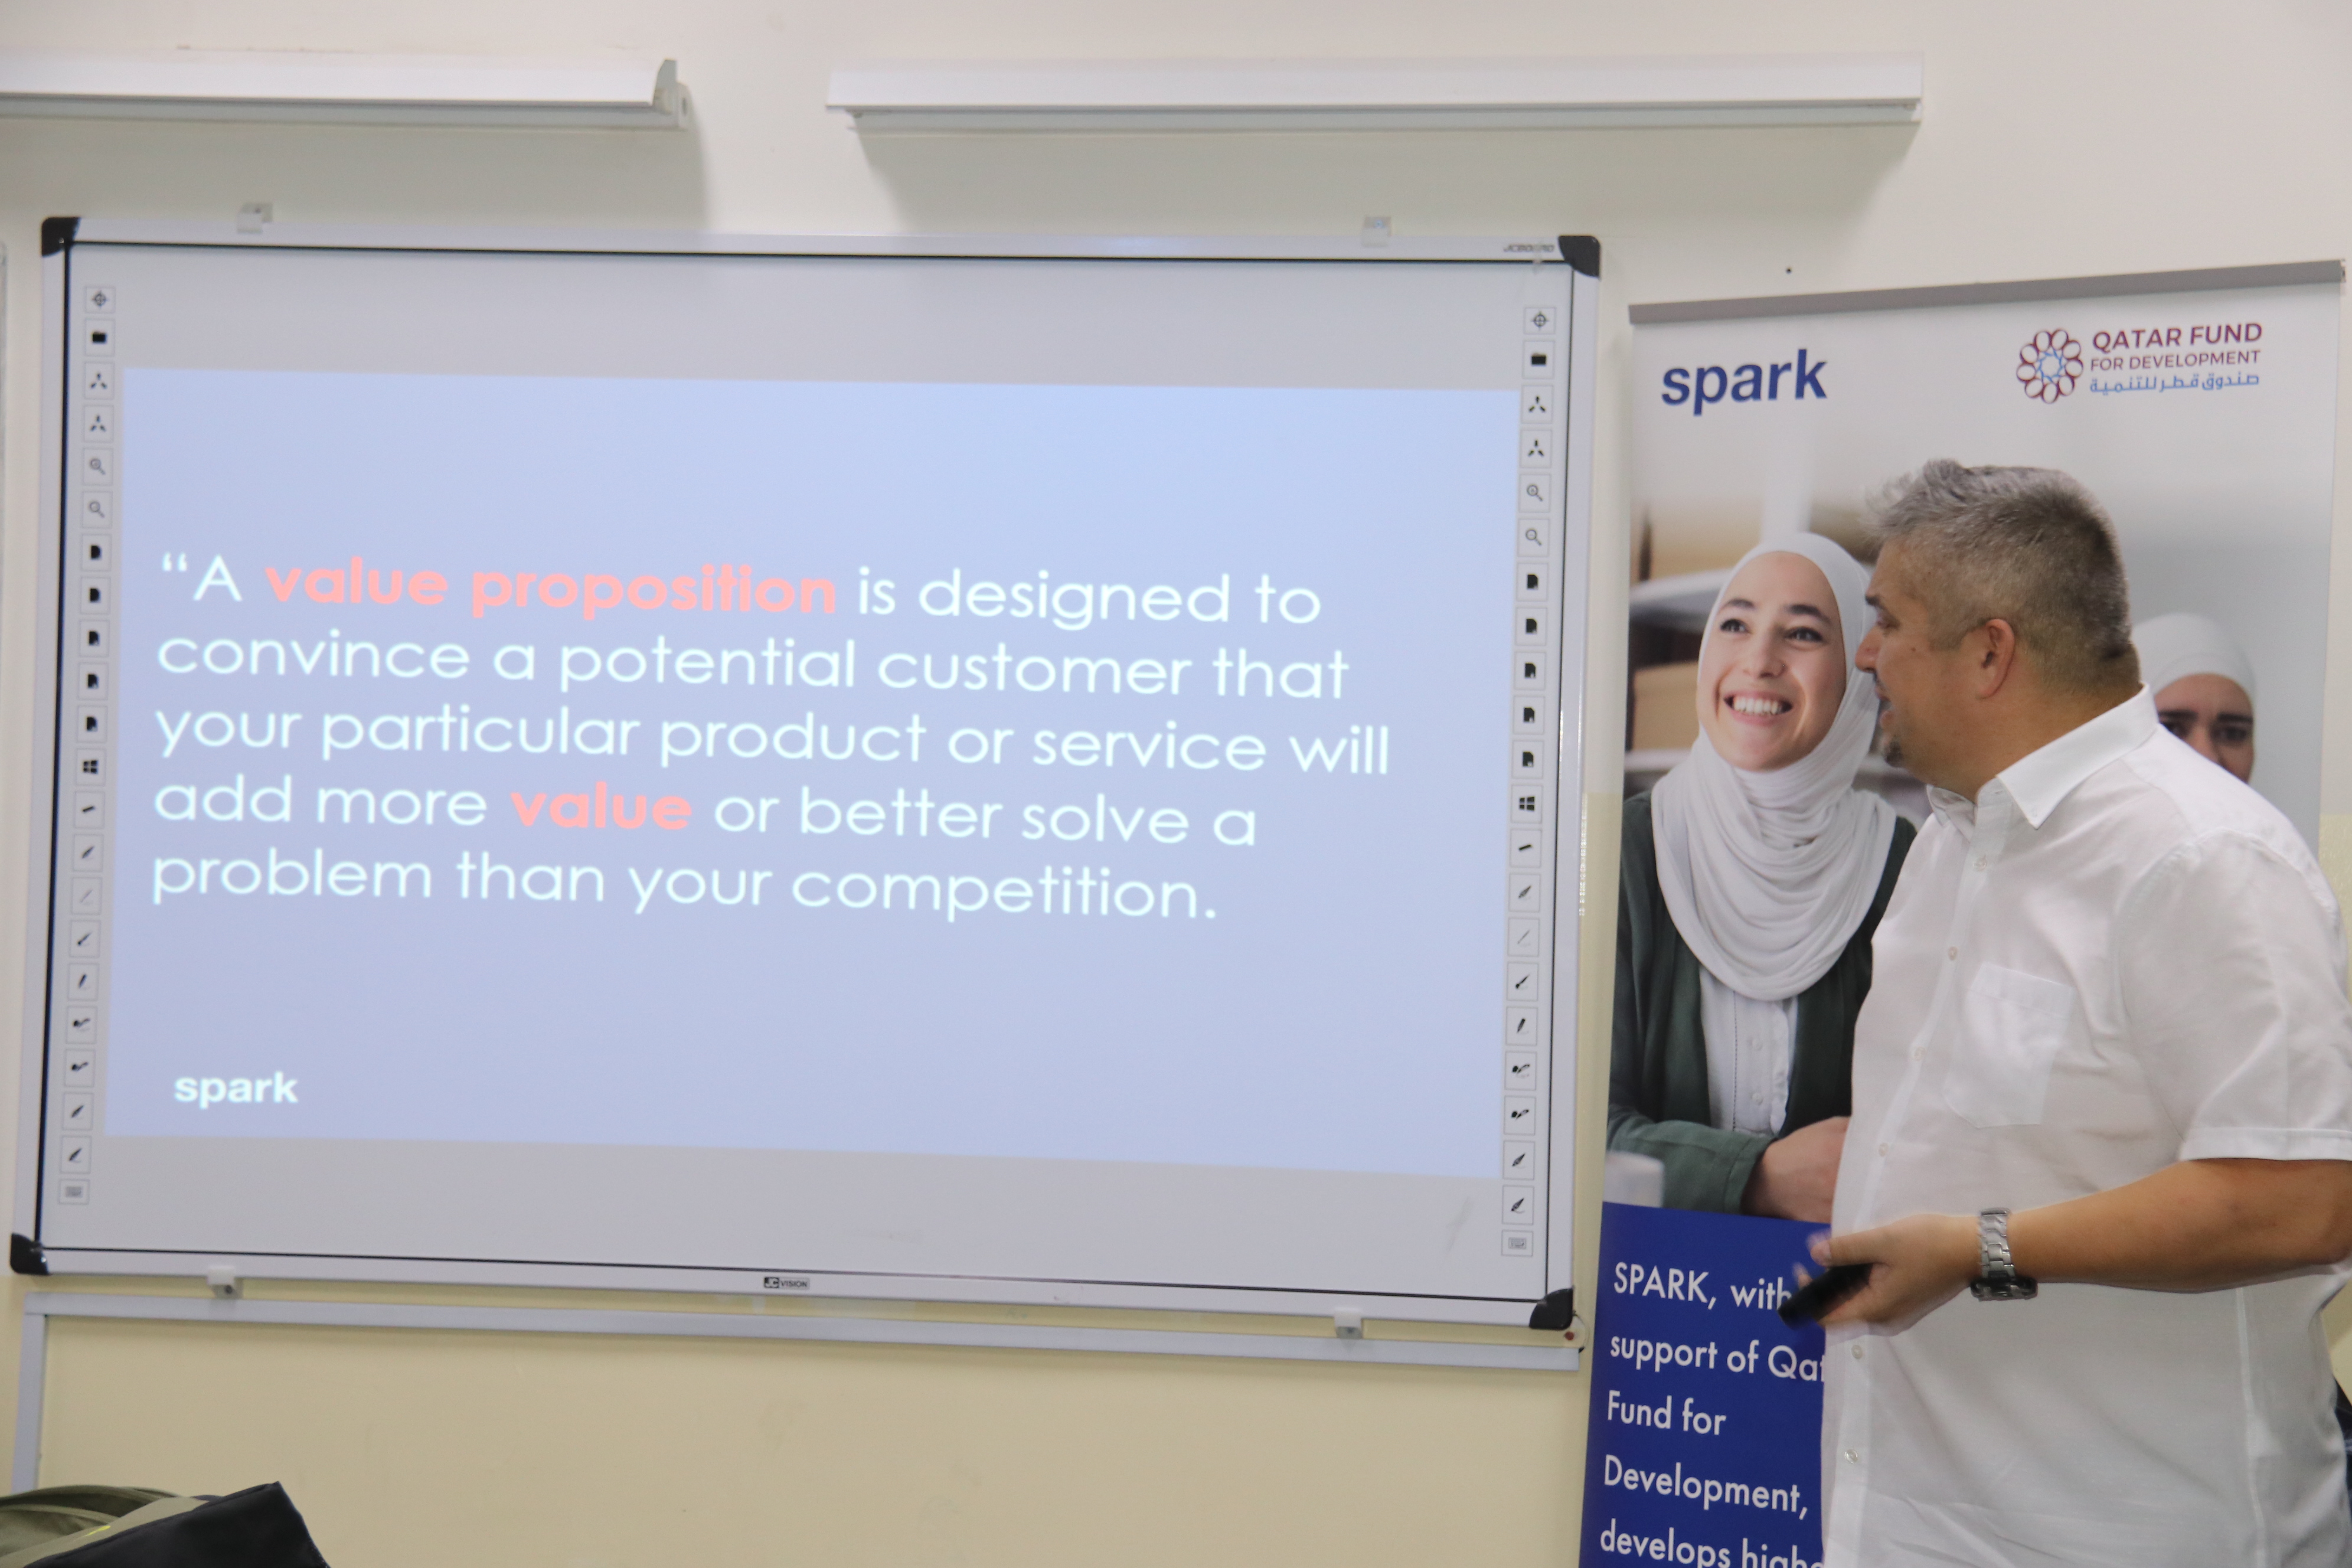 برنامج تدريبي مشترك بين "عمان العربية" ومنظمة سبارك حول خلق القيمة المضافة6